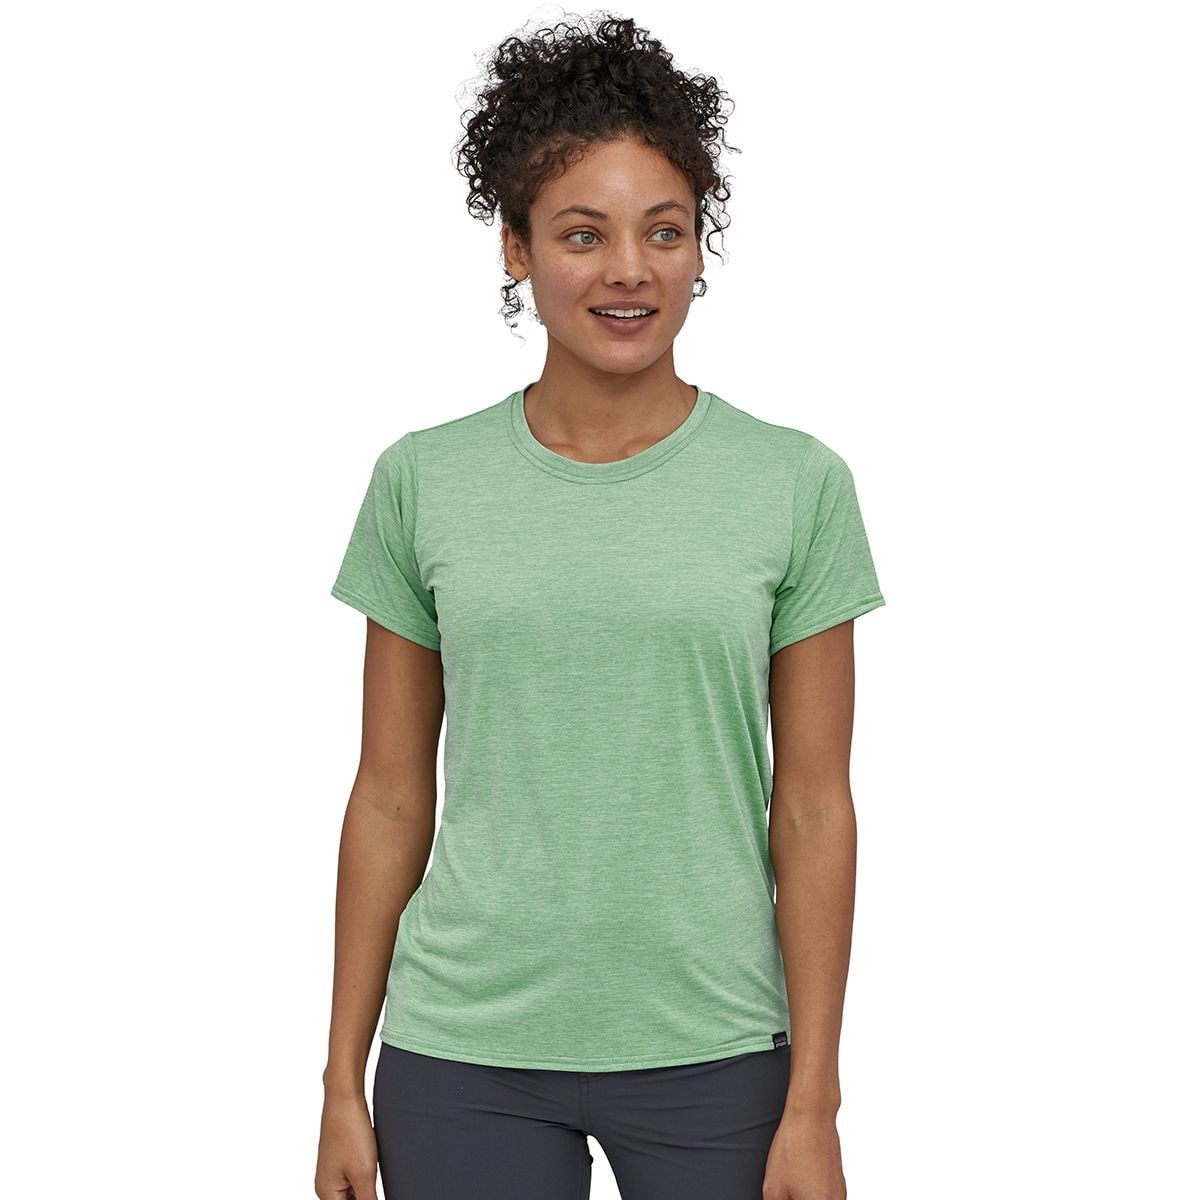 Capilene Cool Daily Short-Sleeve Shirt - Women